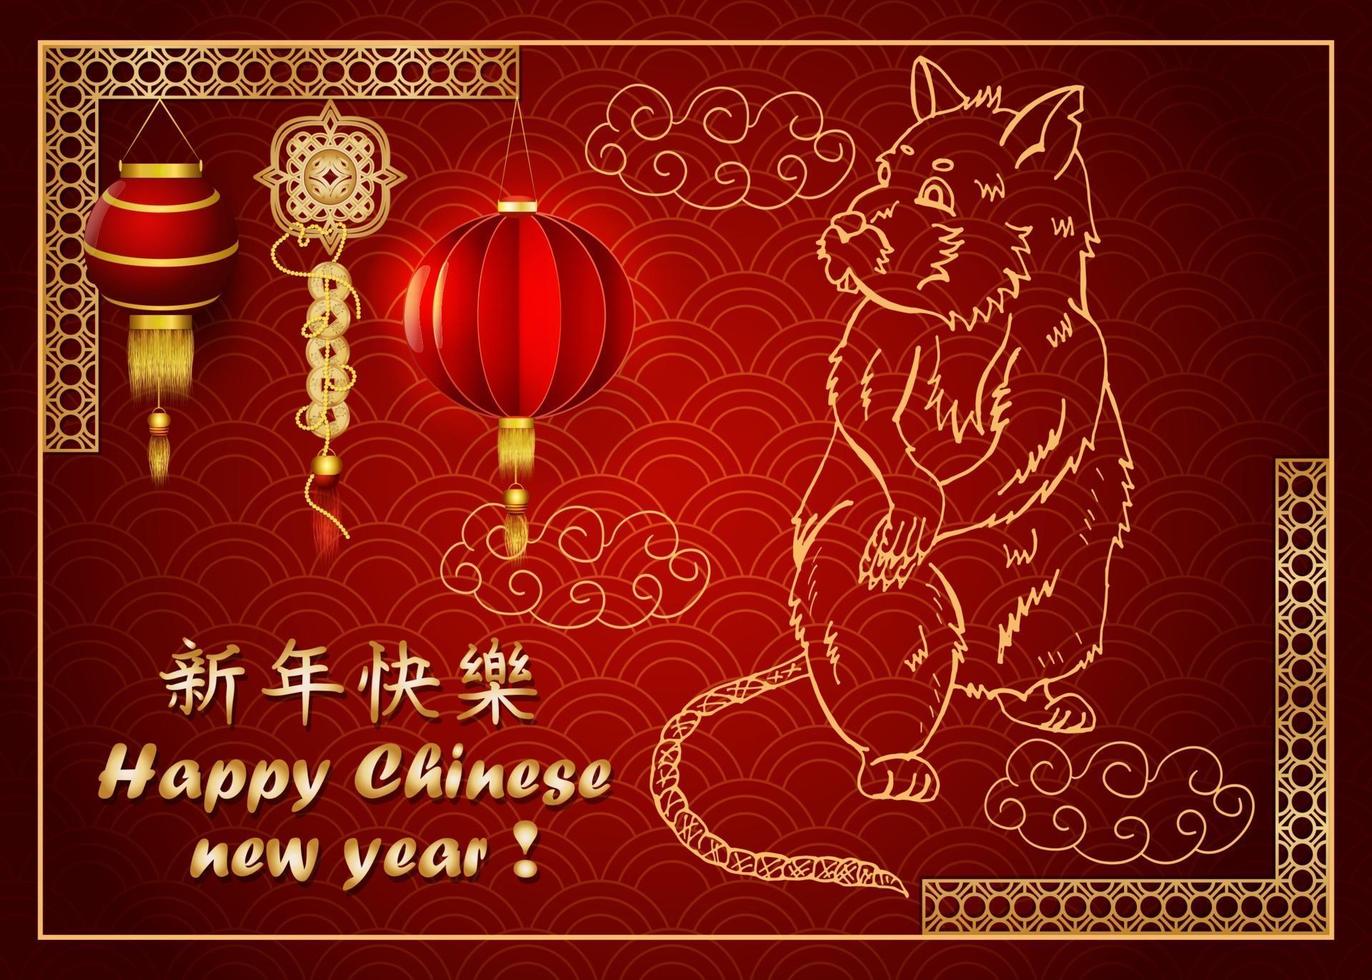 Rot- und Goldfarben zum Thema des chinesischen Neujahrs vektor